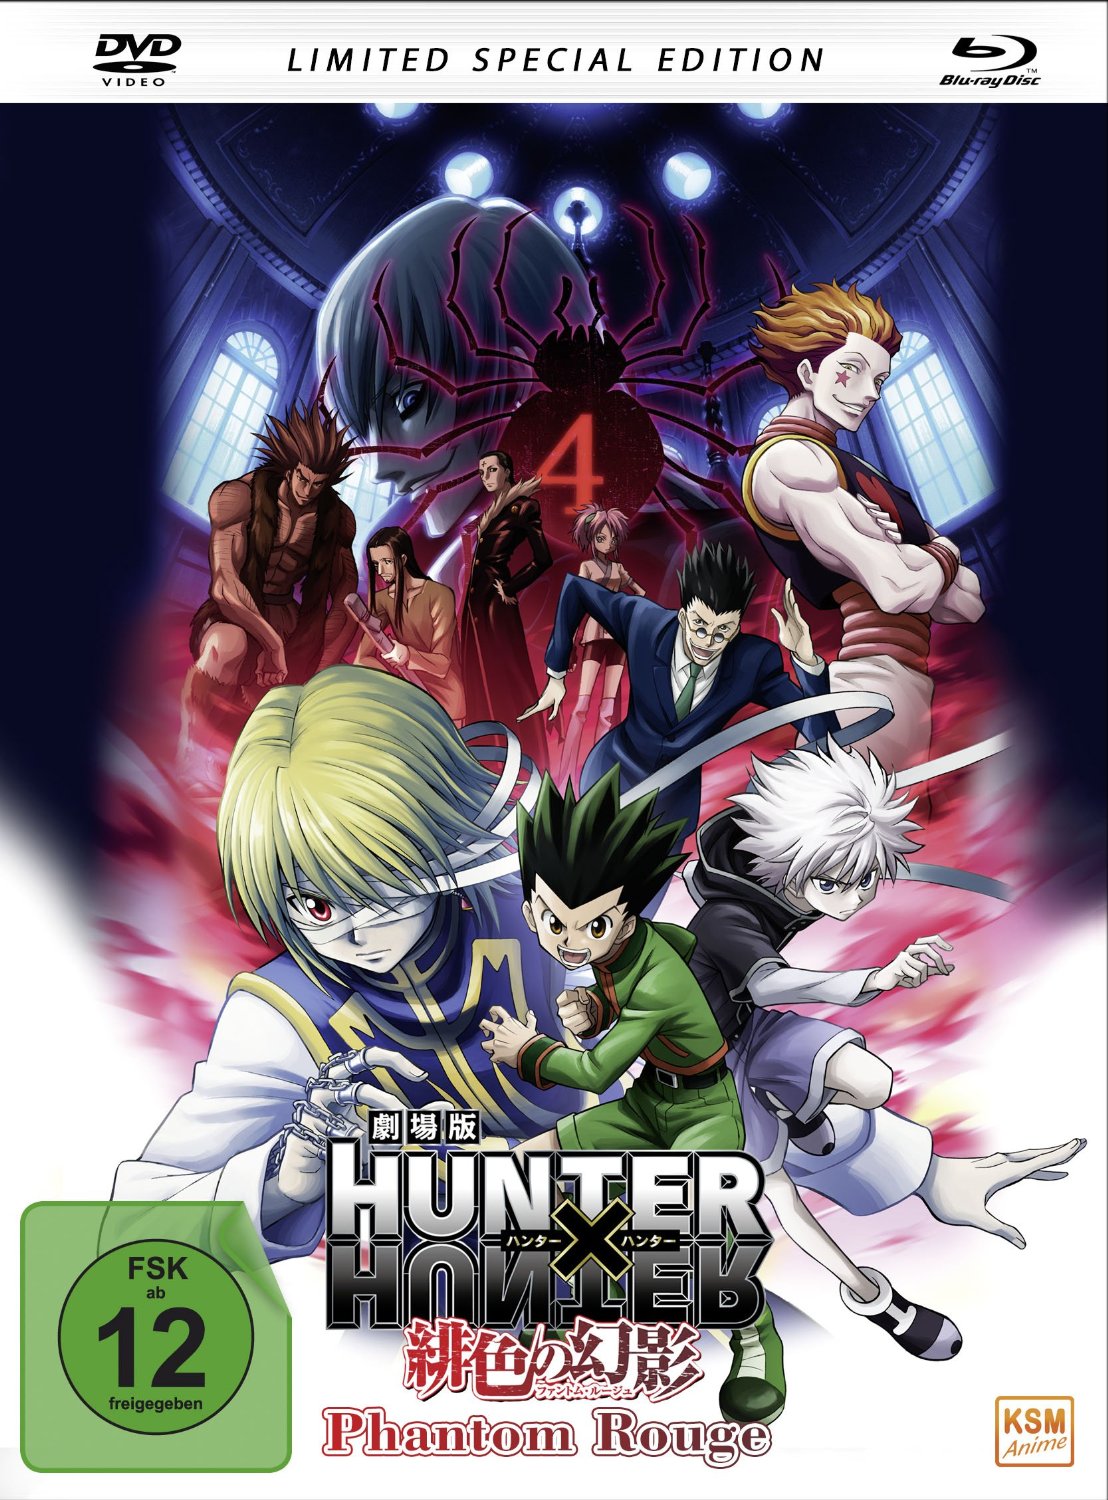 Informationen zur  ‚Hunter x Hunter: Phantom Rouge‘ Synchro bekannt gegeben